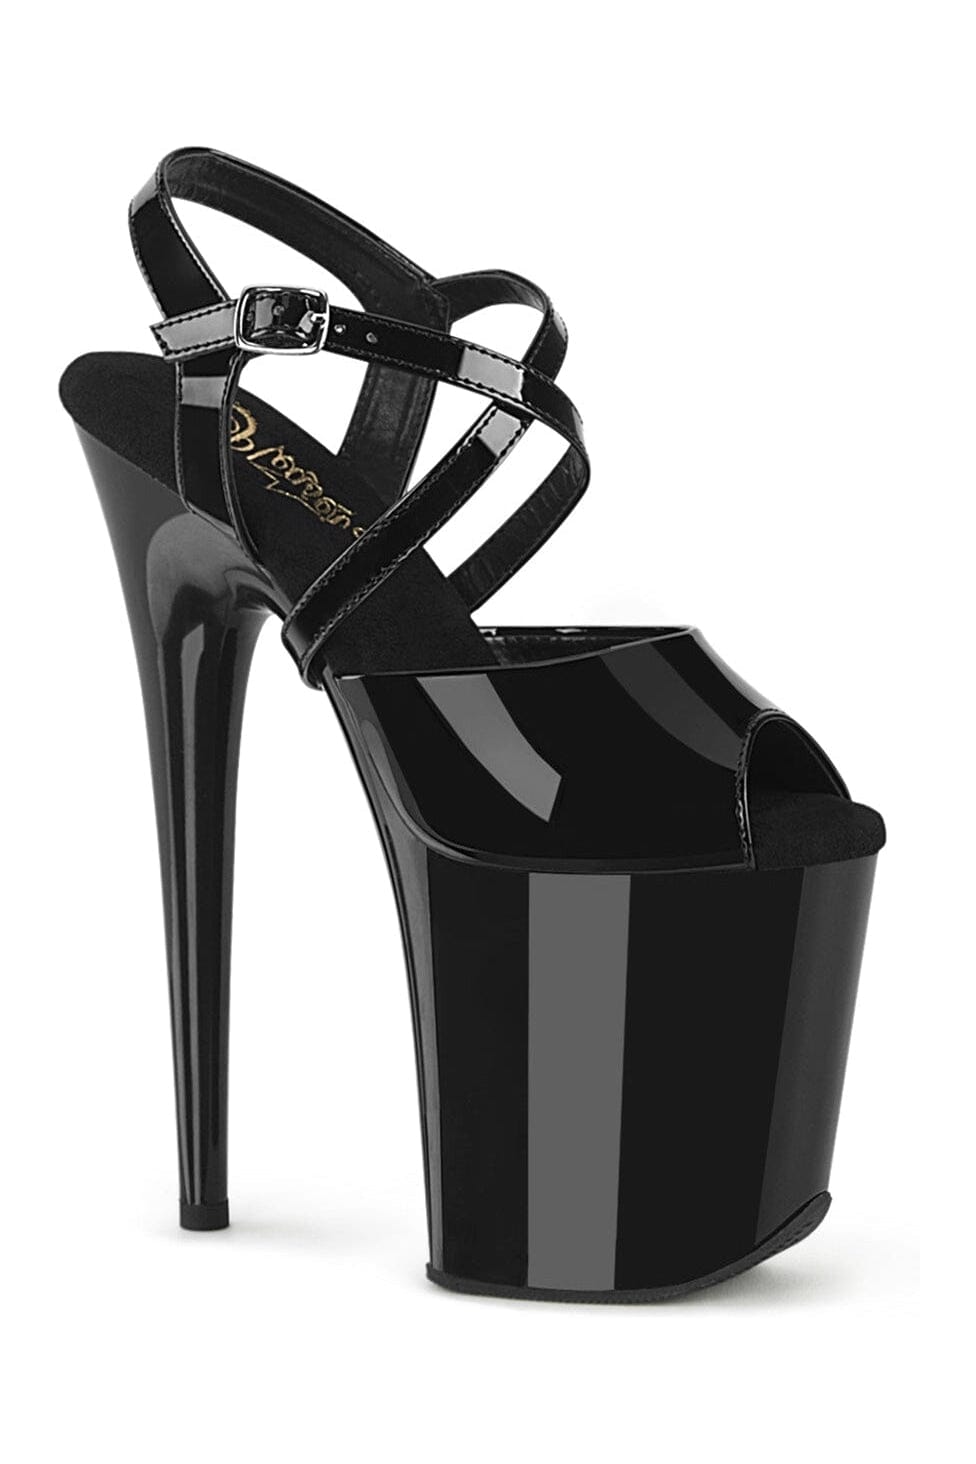 FLAMINGO-824 Black Patent Sandal-Sandals-Pleaser-Black-10-Patent-SEXYSHOES.COM